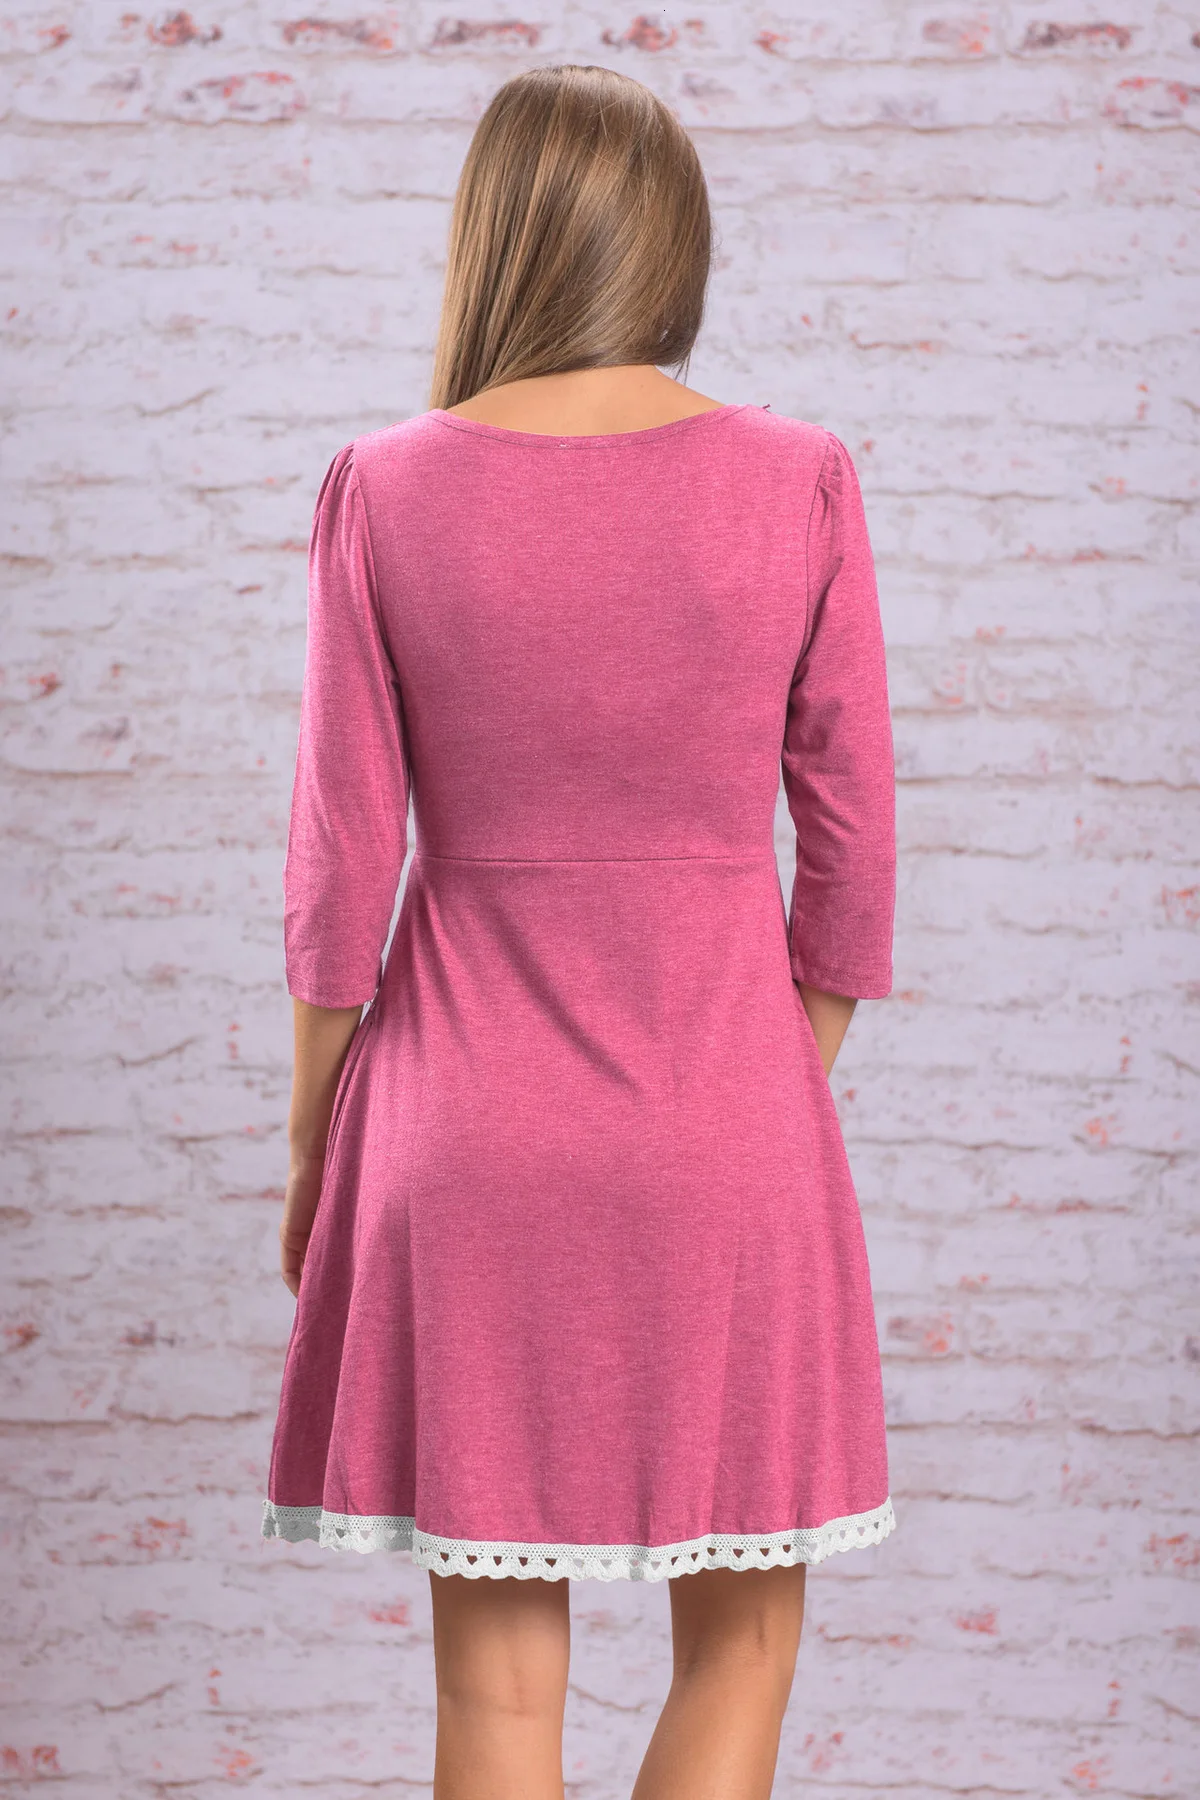 ENXI Одежда для беременных 2018 Демисезонный беременных женское платье синий розовый сплошной Беременность Vestidos с кружевом плюс Размеры 5XL